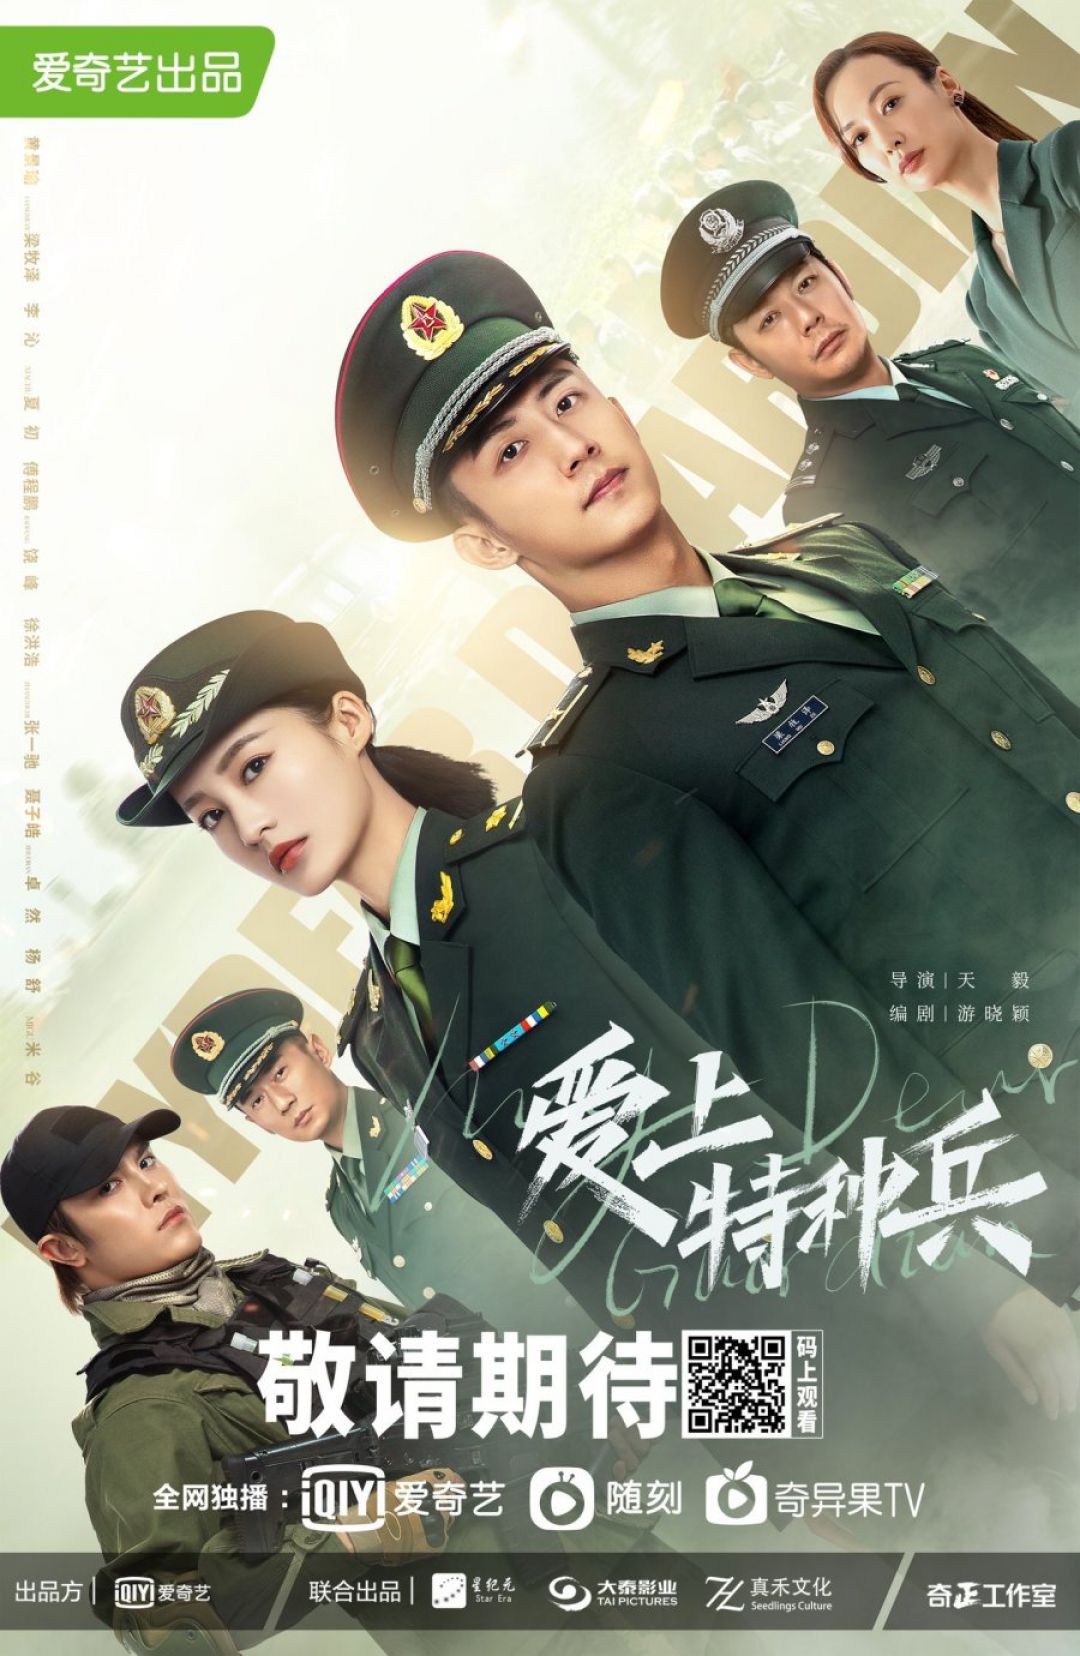 Rekomendasi Drama China Romantis yang Bersemi di Angkatan Militer-Image-5